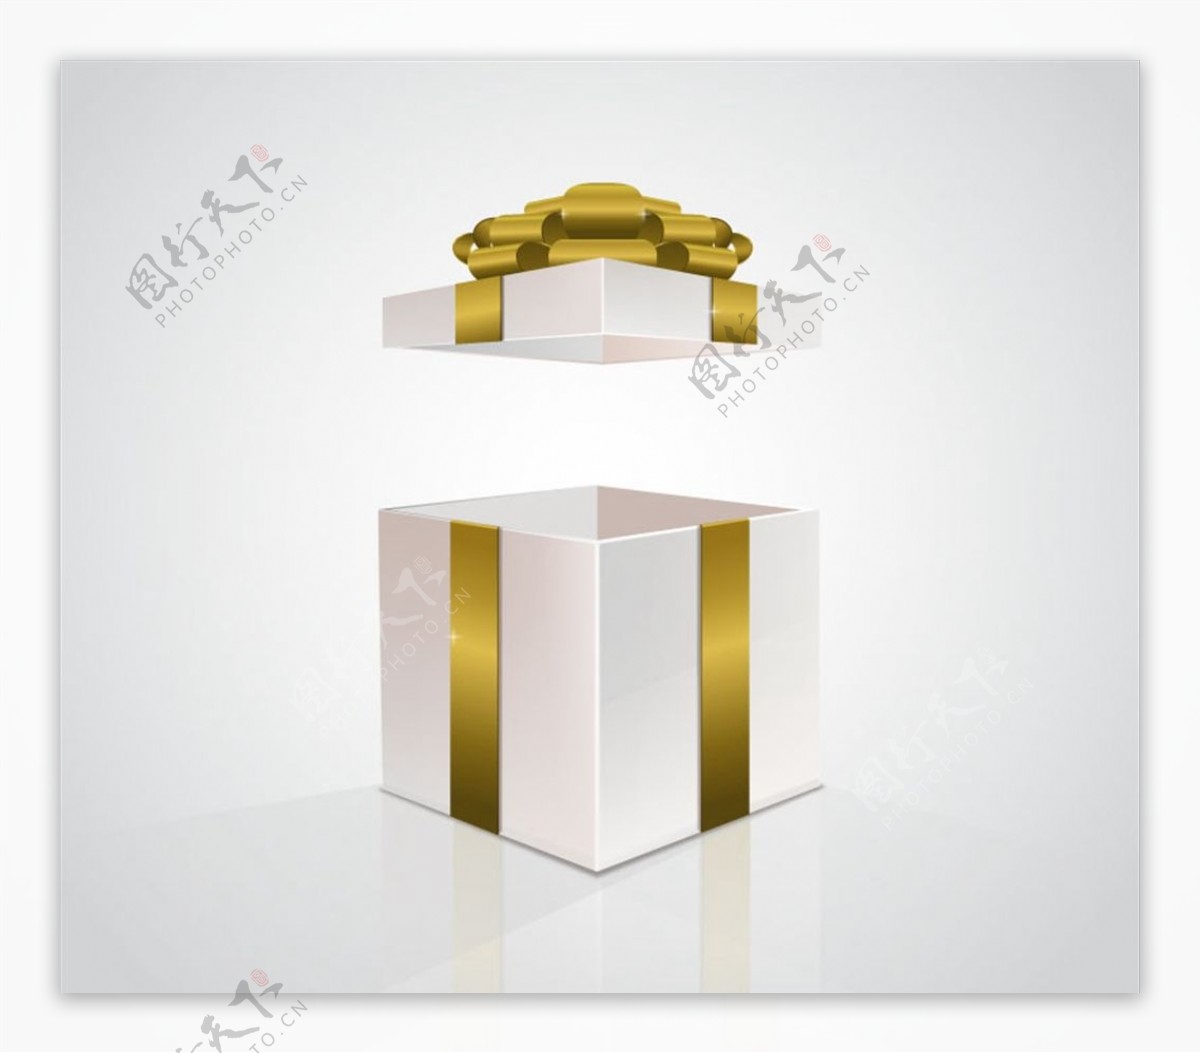 金色丝带礼品盒